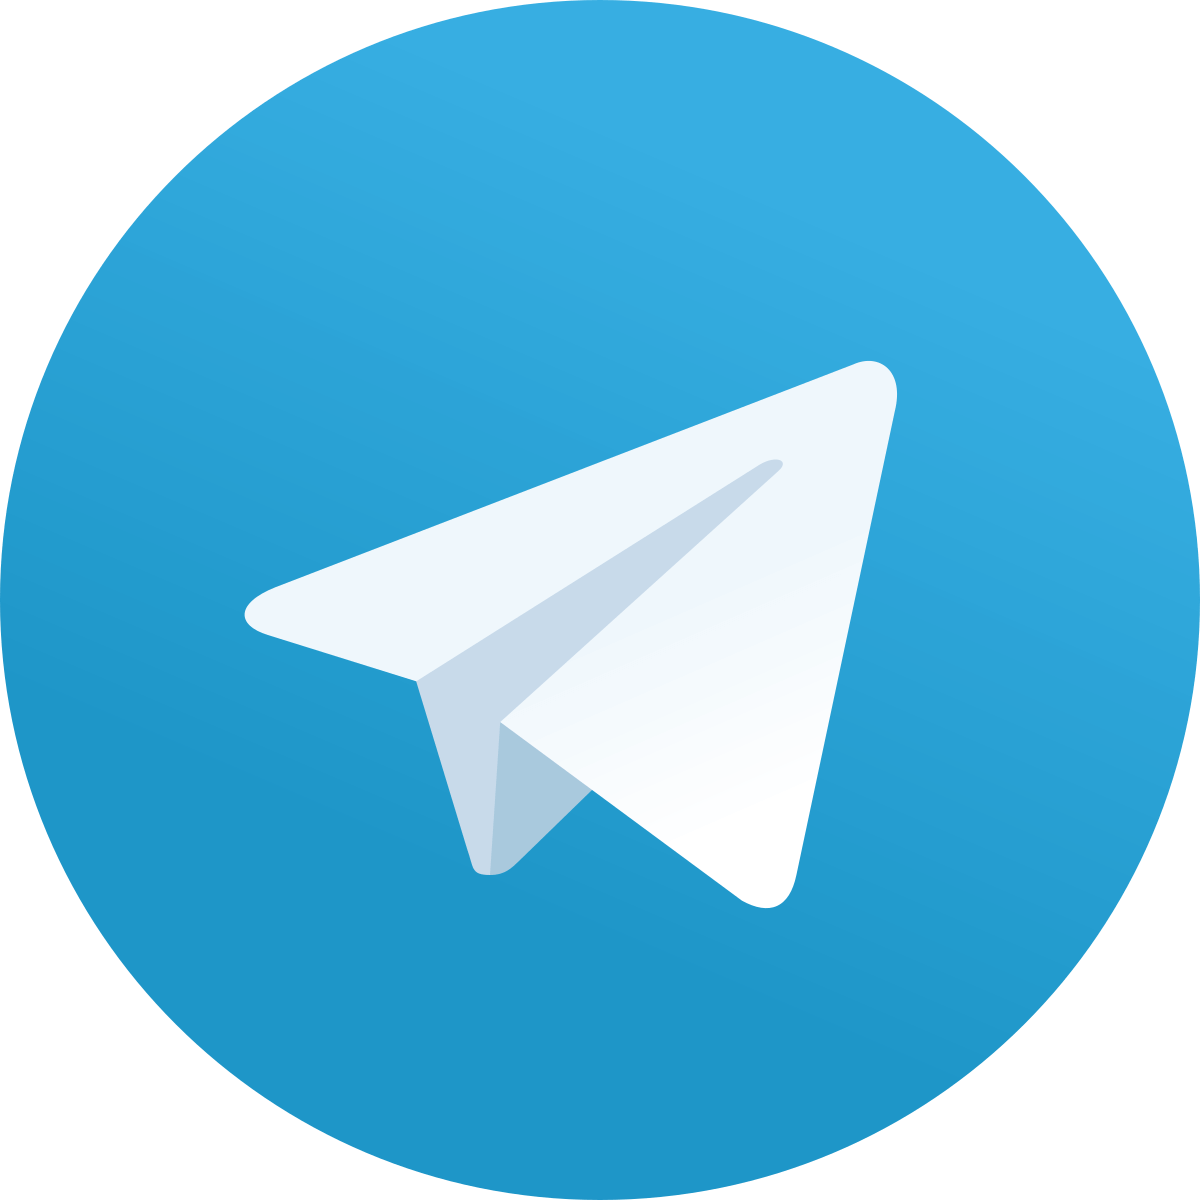 Телеграм Десктоп / Telegram Desktop На русском для компьютера на Windows ПК